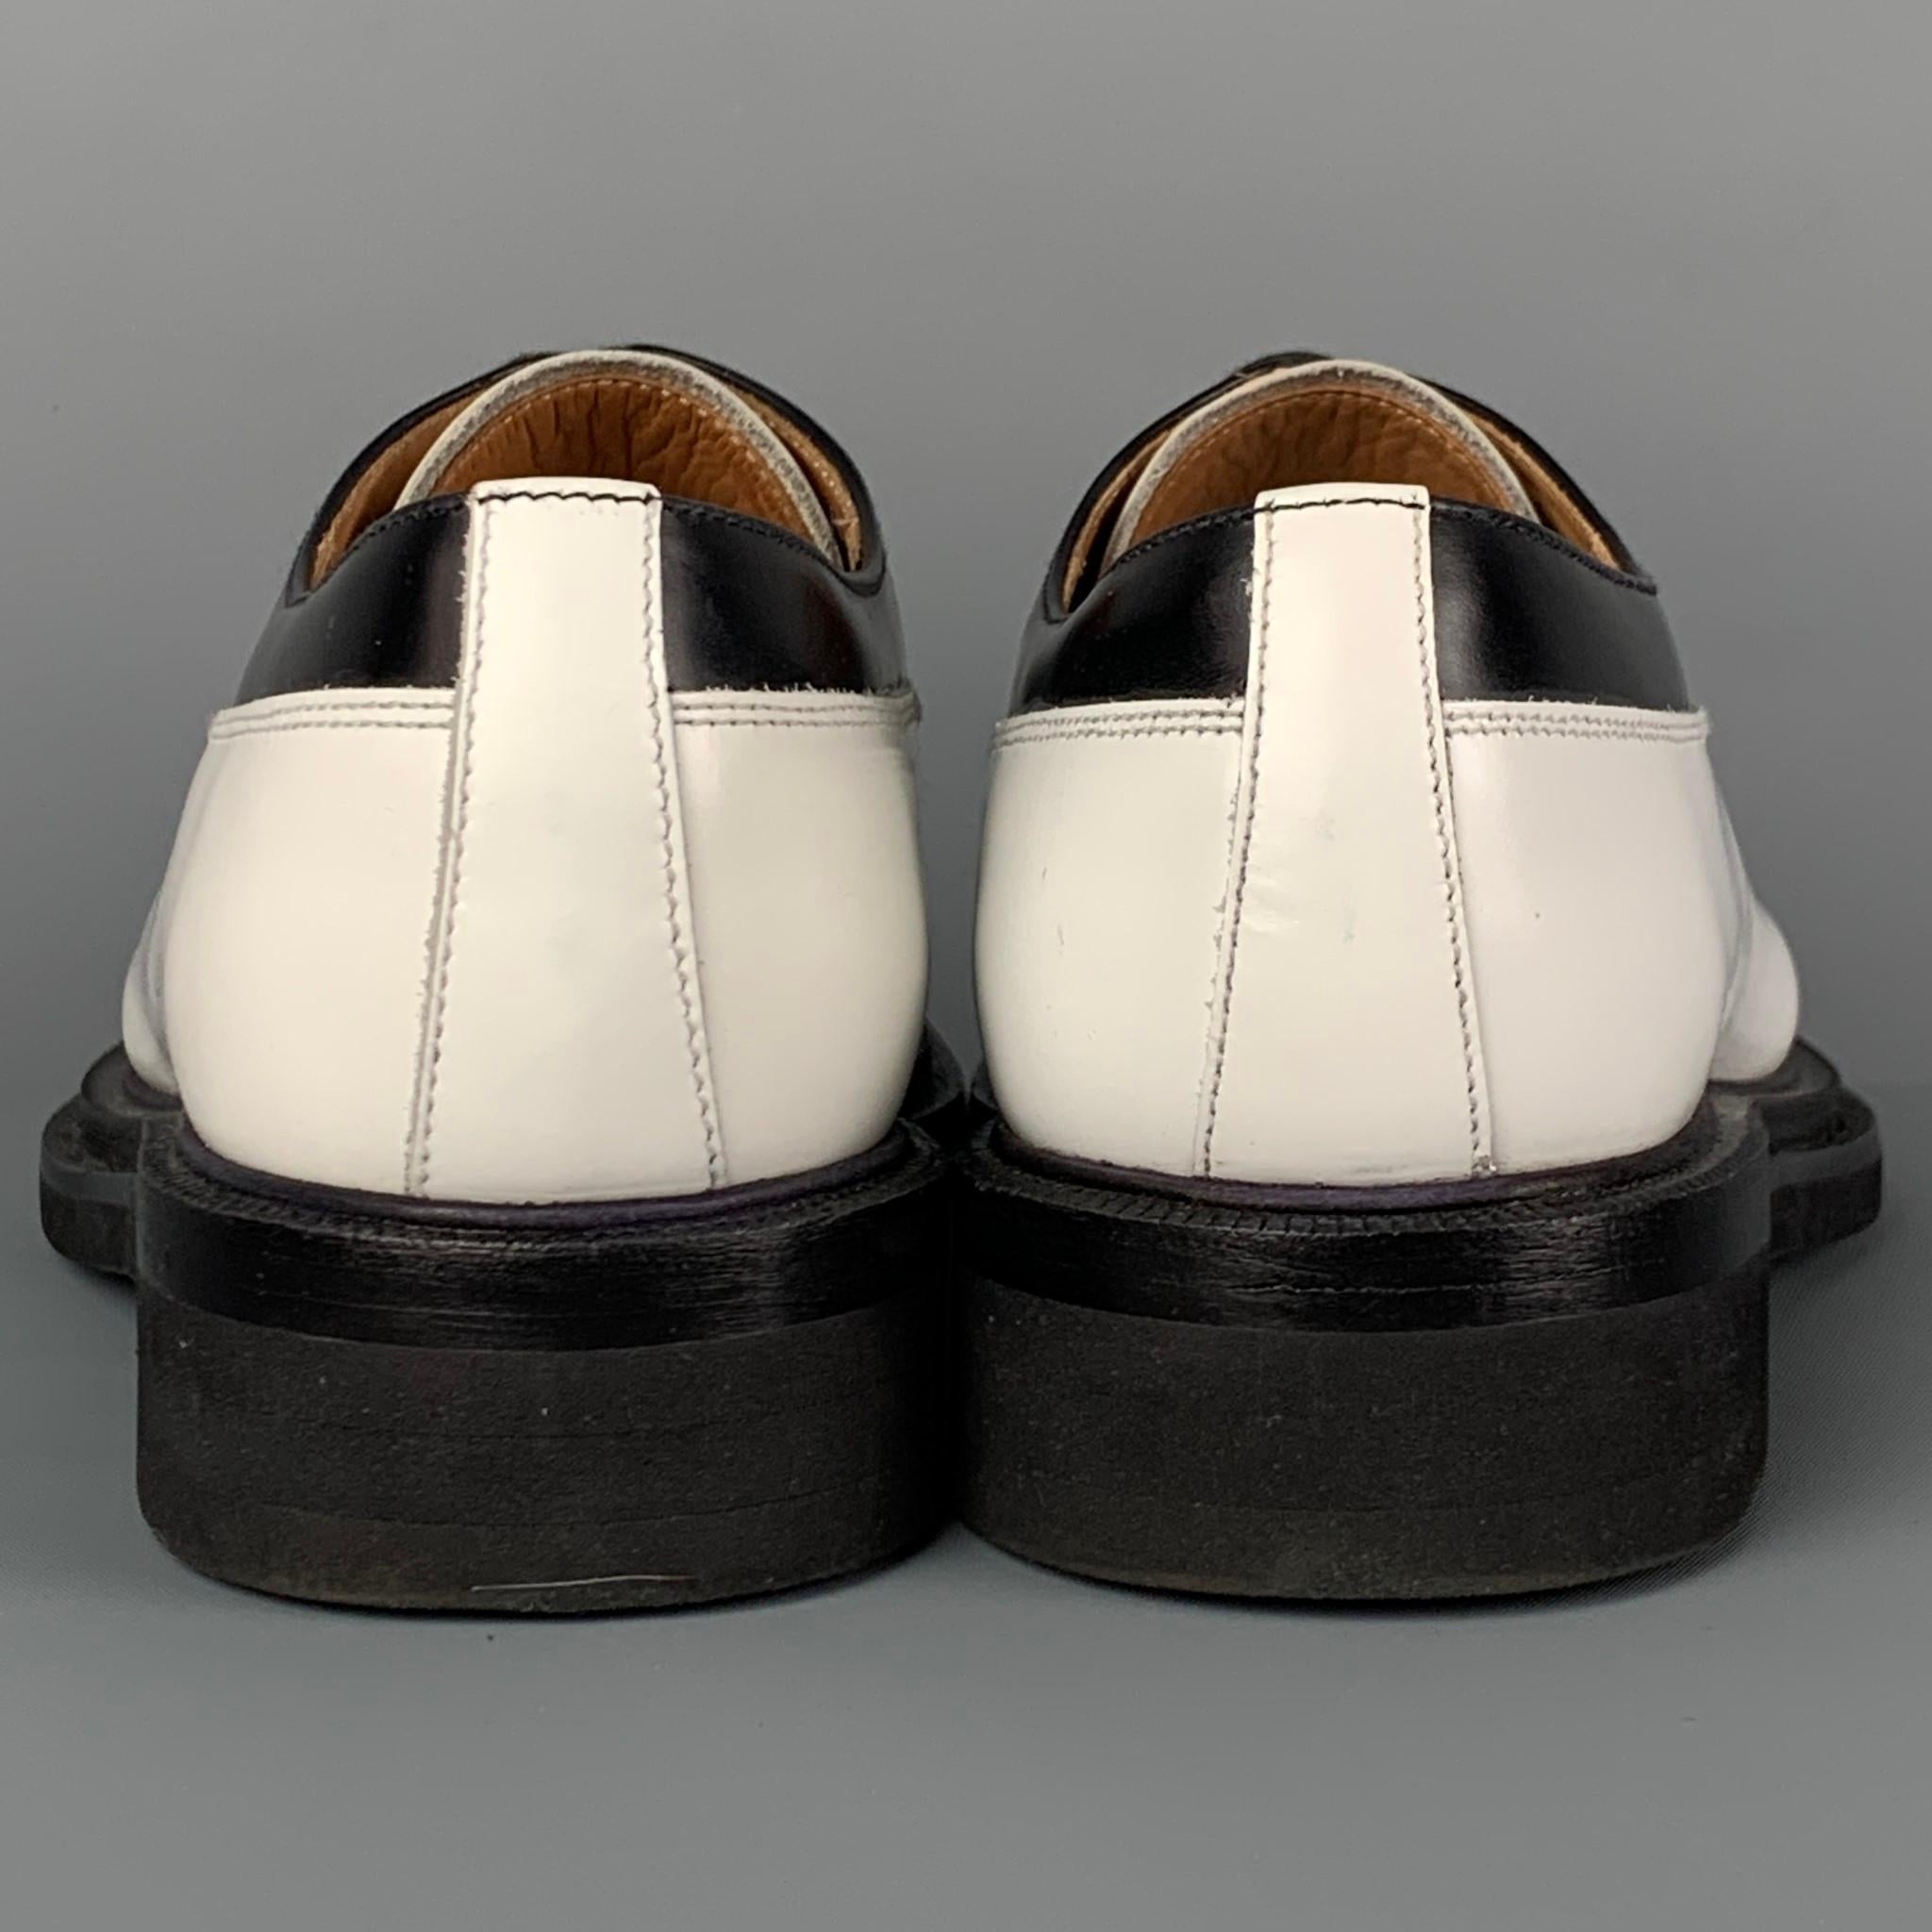 white church shoes